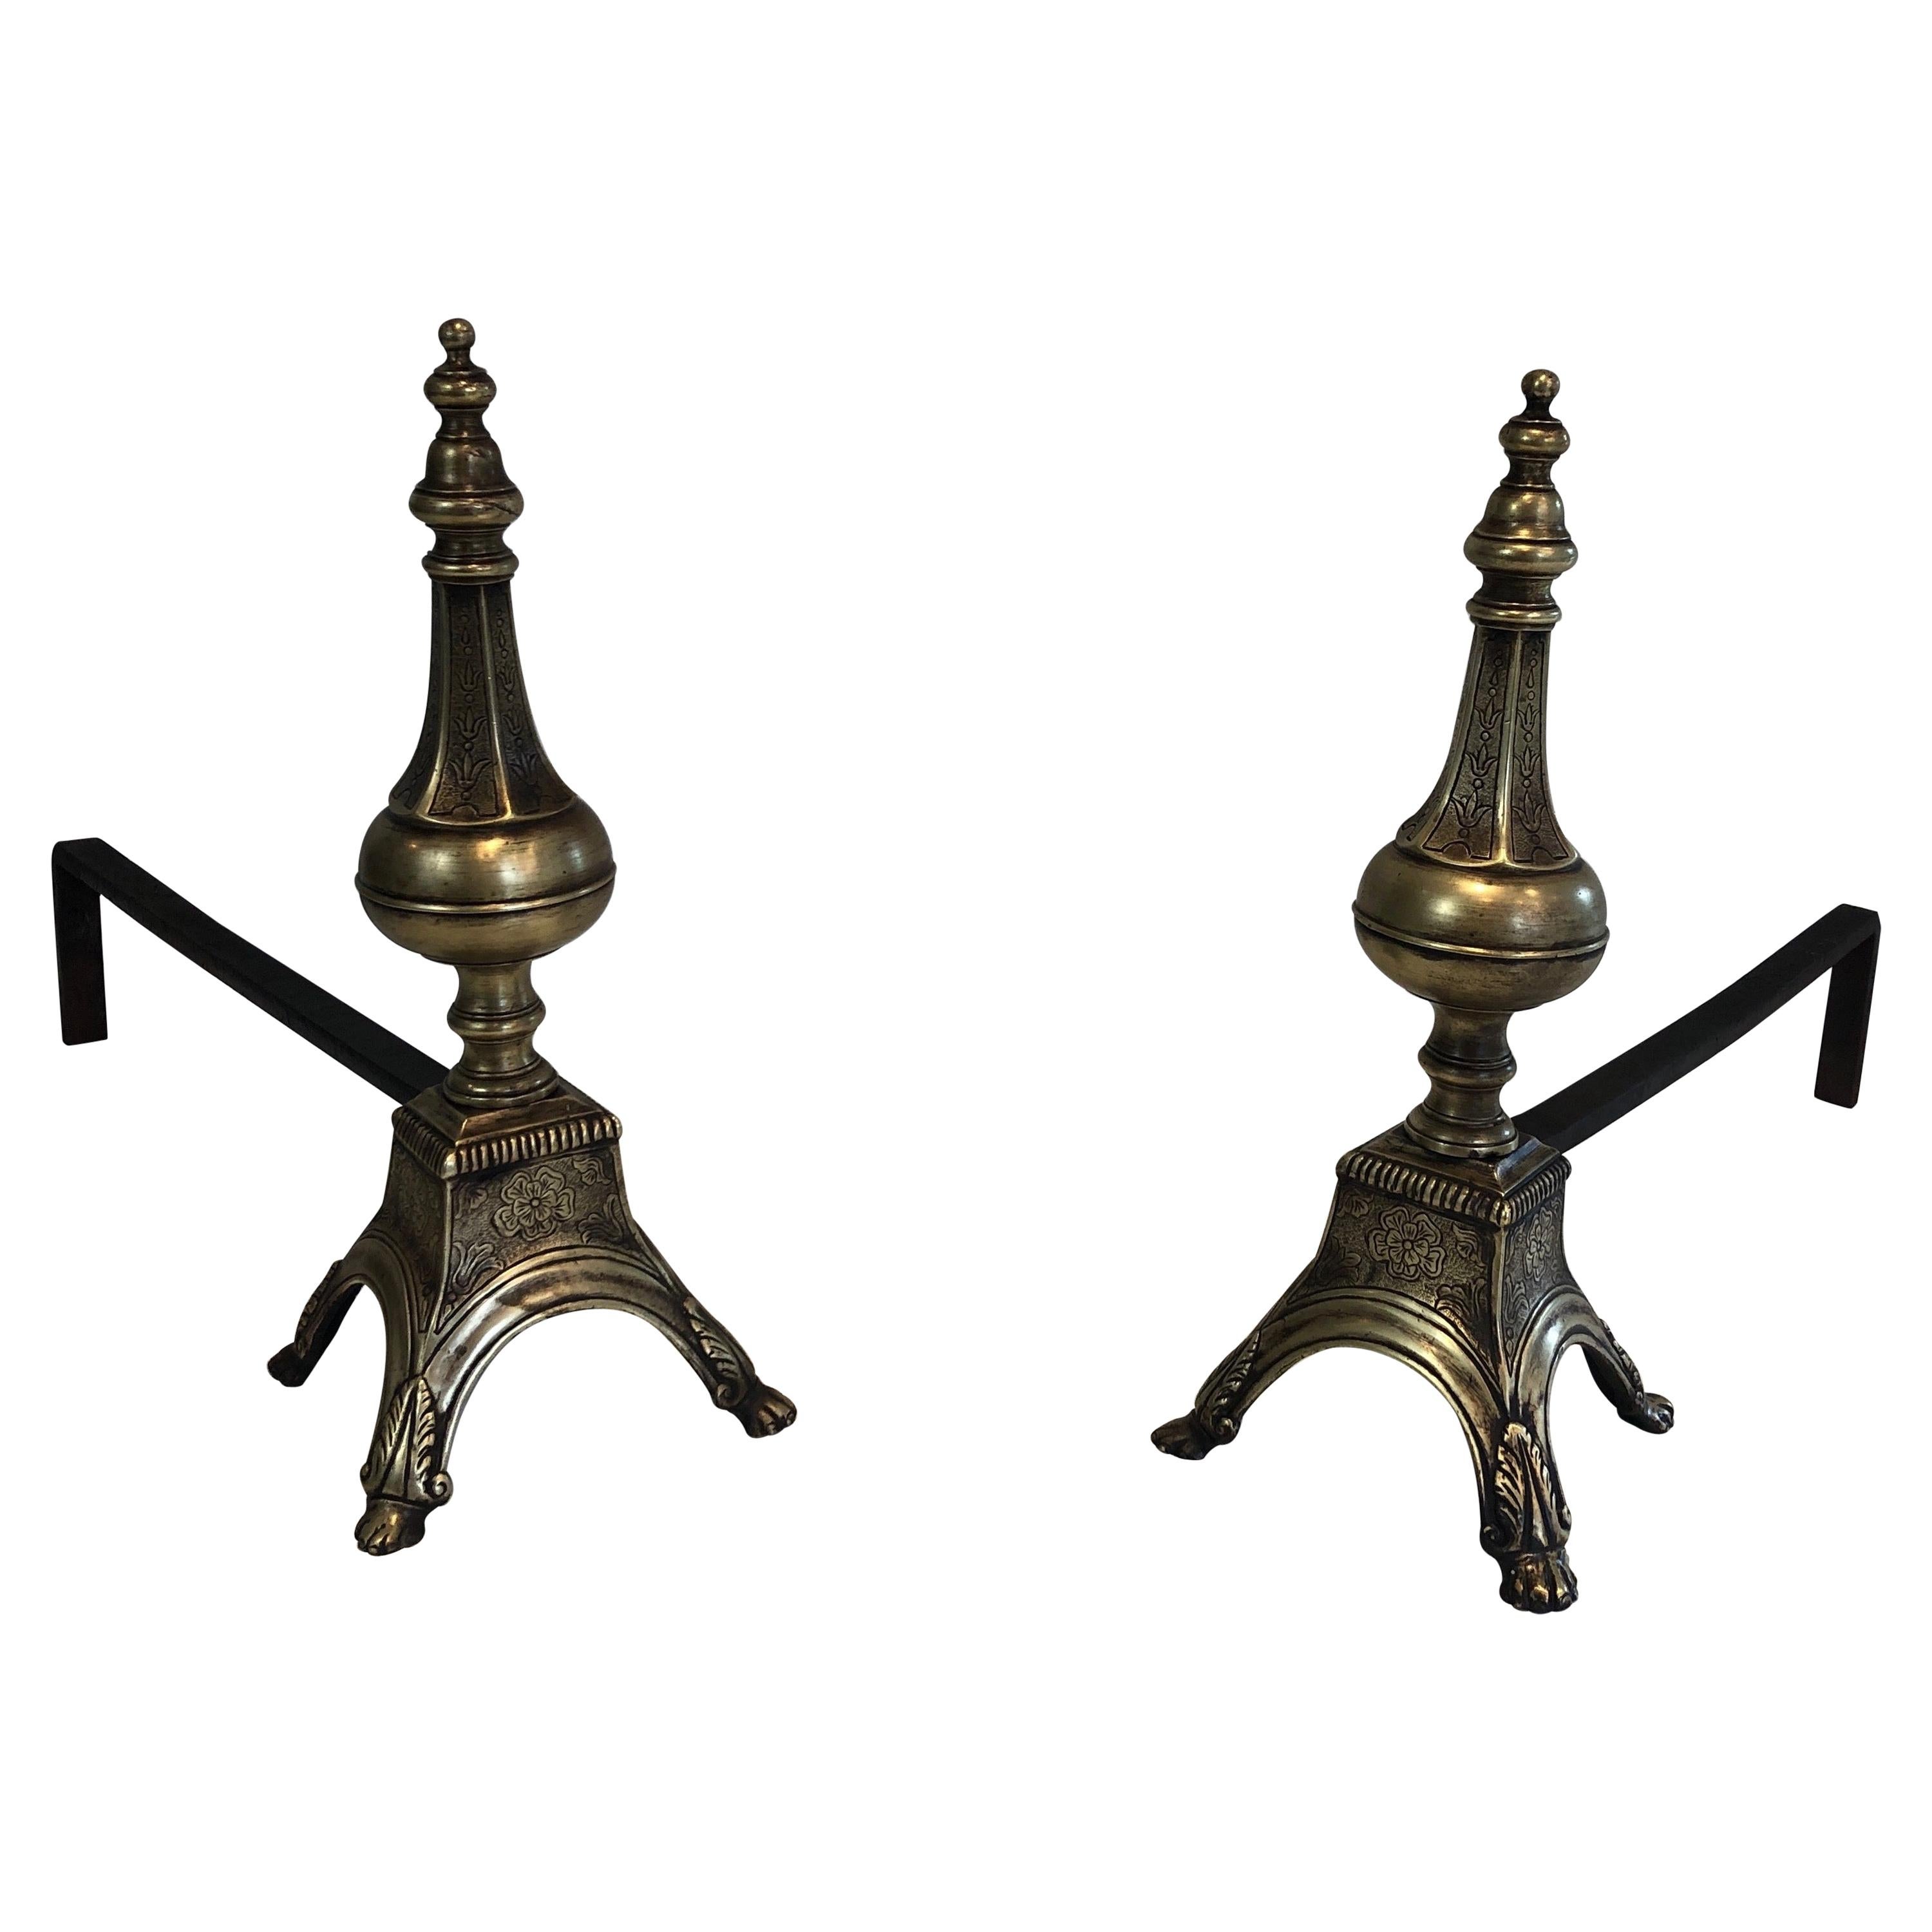 Seltenes Paar Bronze- und Schmiedeeisen-Feuerböcke im Louis-Stil des 16. Jahrhunderts, 19. Jahrhundert